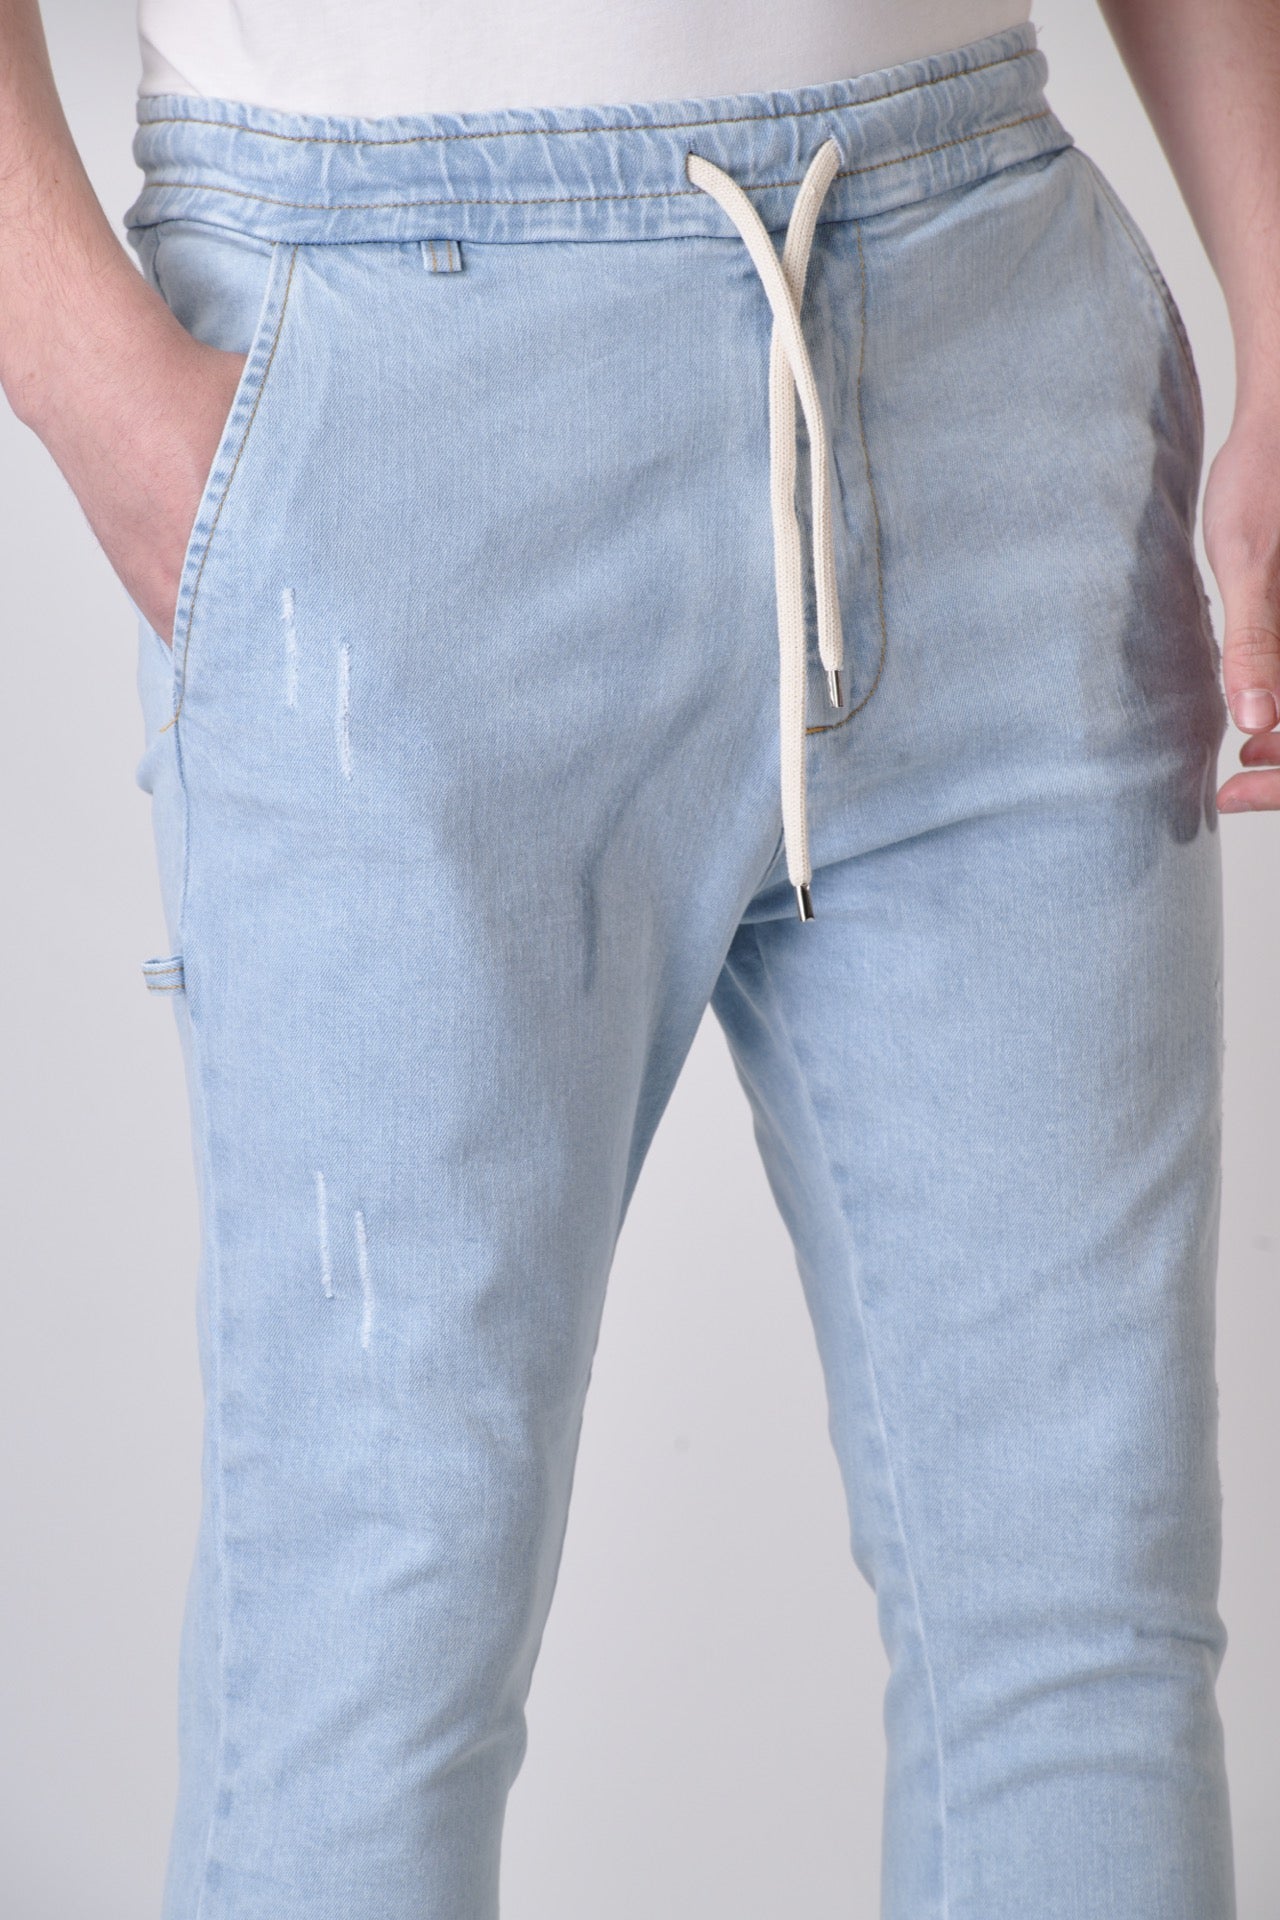 ALICANTE - Pantalone Drill Azzurro Chiaro con elastico